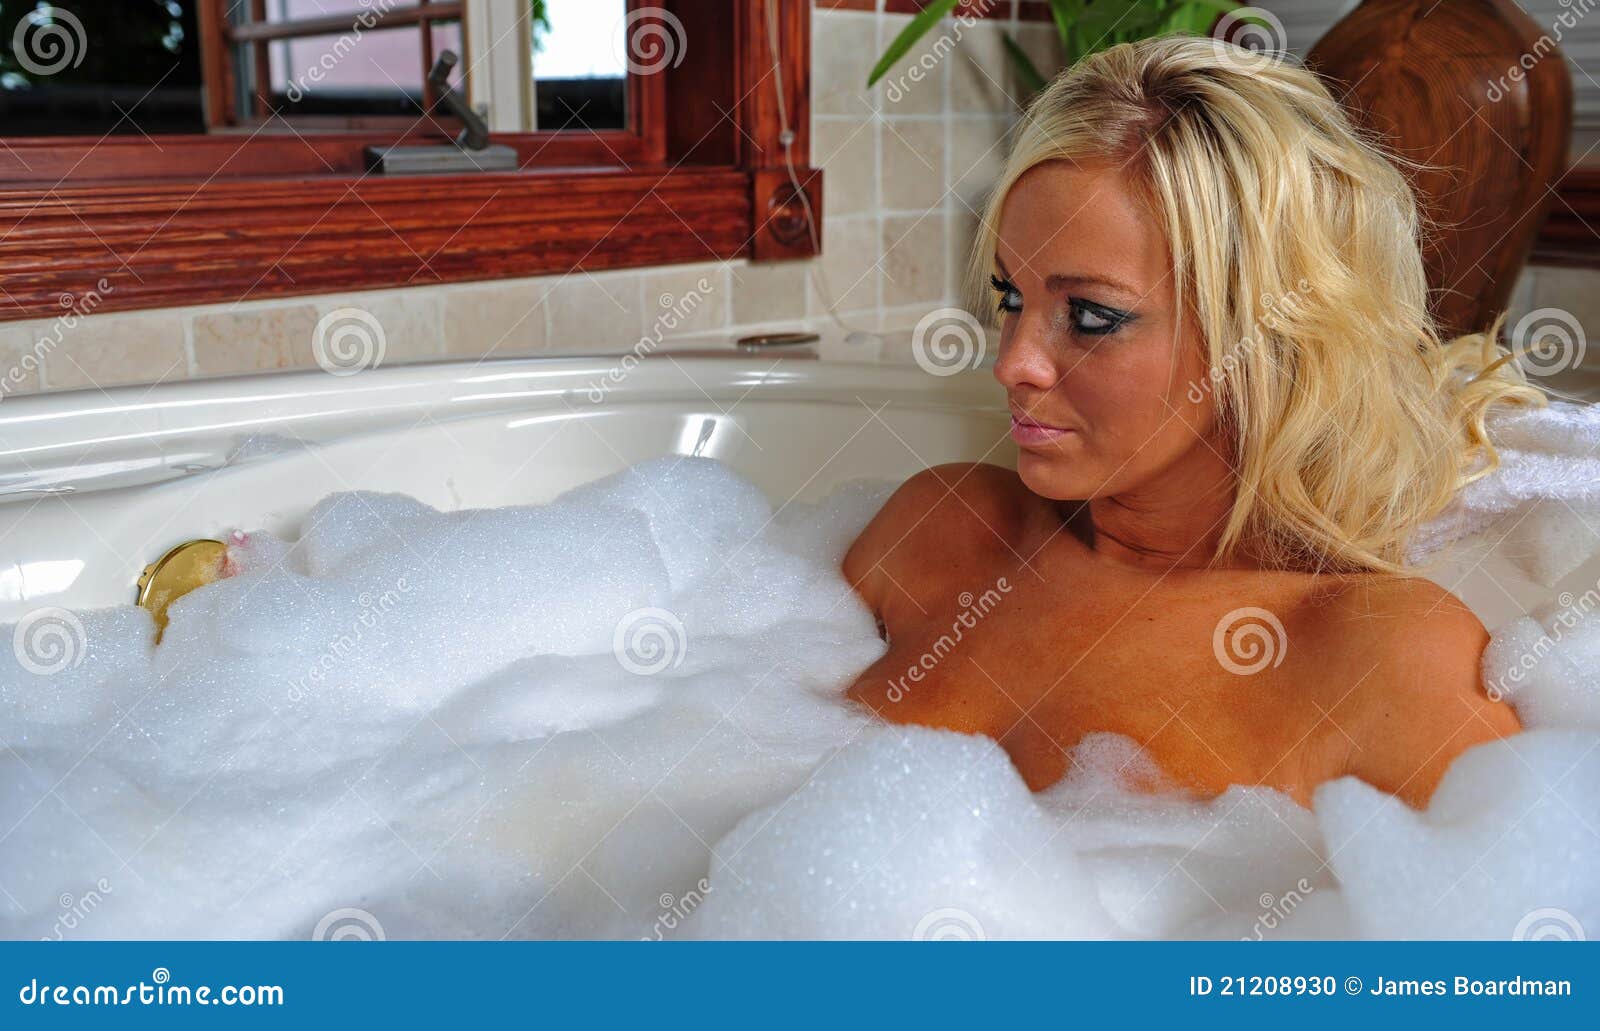 Bathing Beautiful Blond Woman Stock Photo - Image of bubble, woman